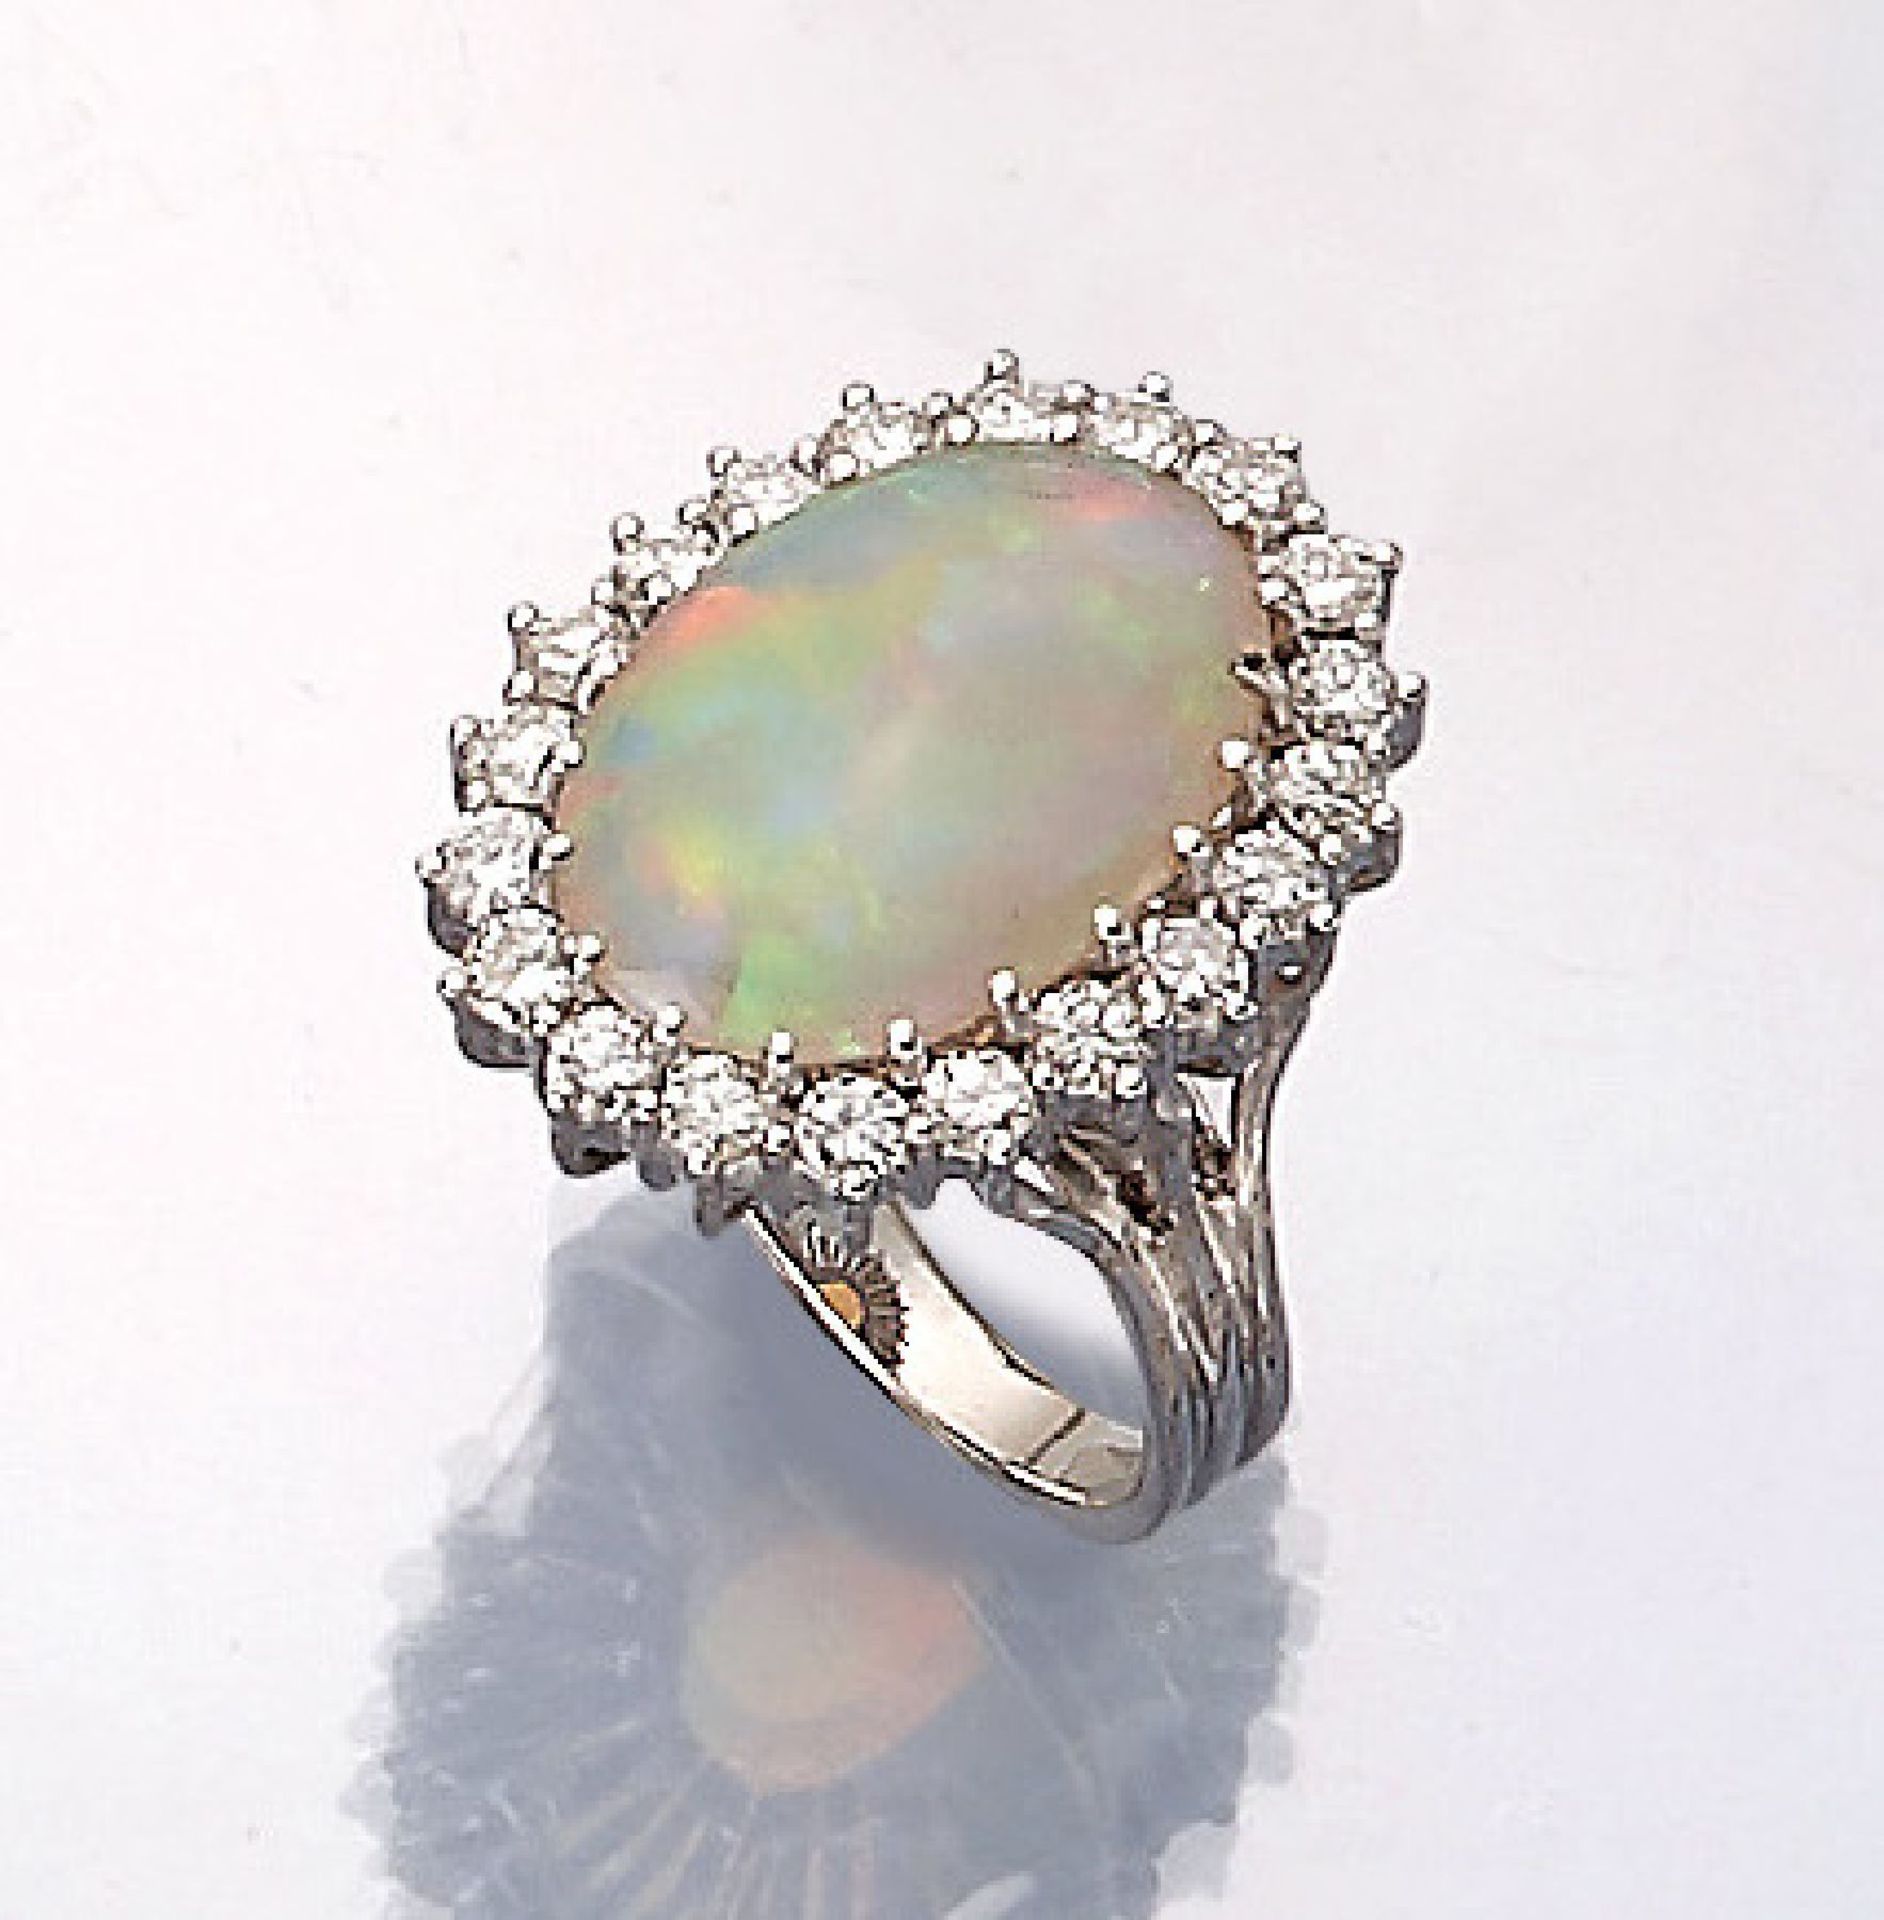 18 kt Gold Ring mit Opal und Brillanten, WG750/000, ovaler Opalcabochon ca. 4.60 ct, Farbspiel in